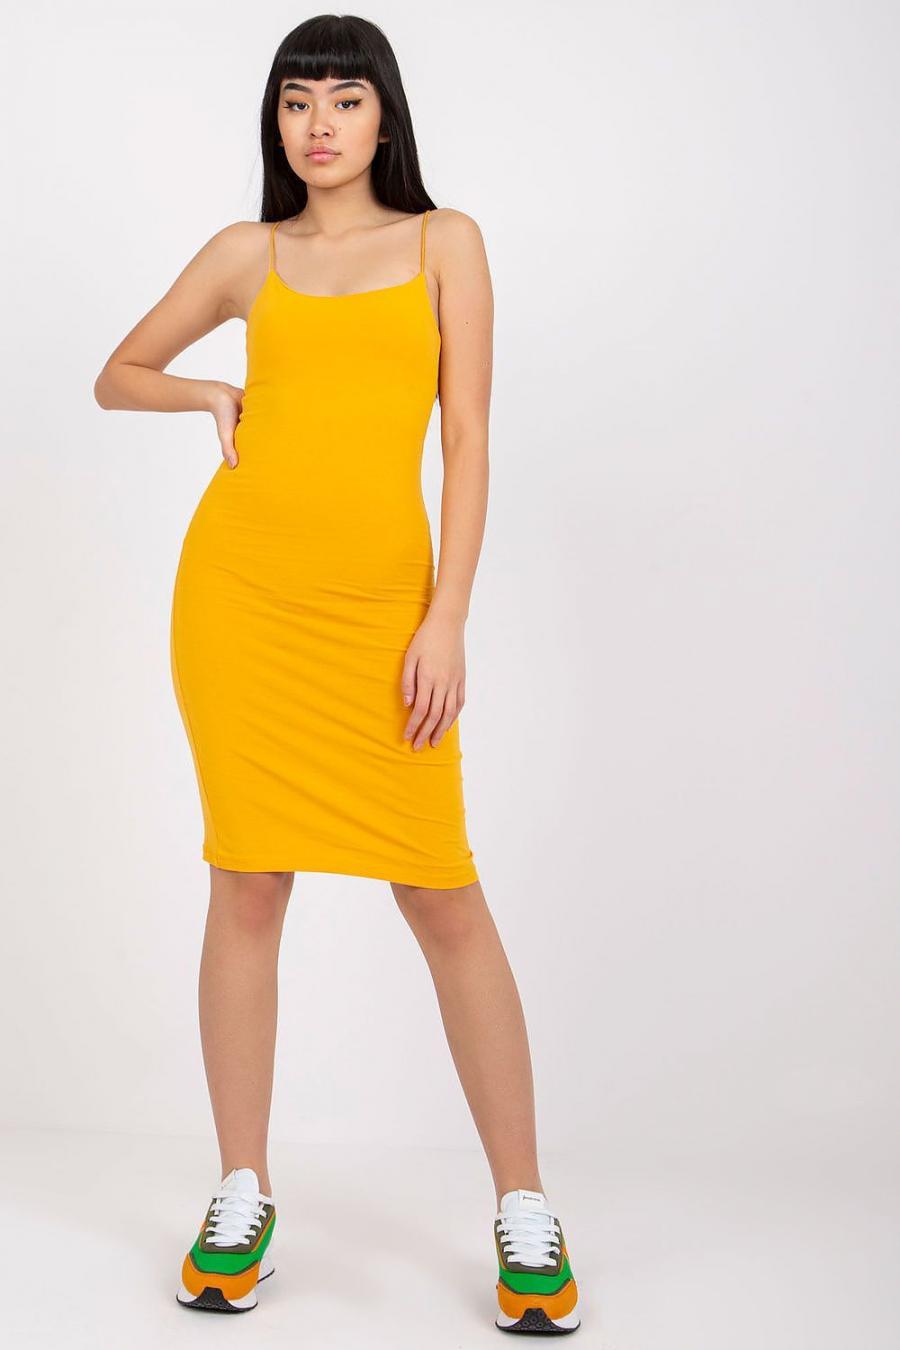 Ostatní značky šaty dámské 165147 - žlutá - velikost M